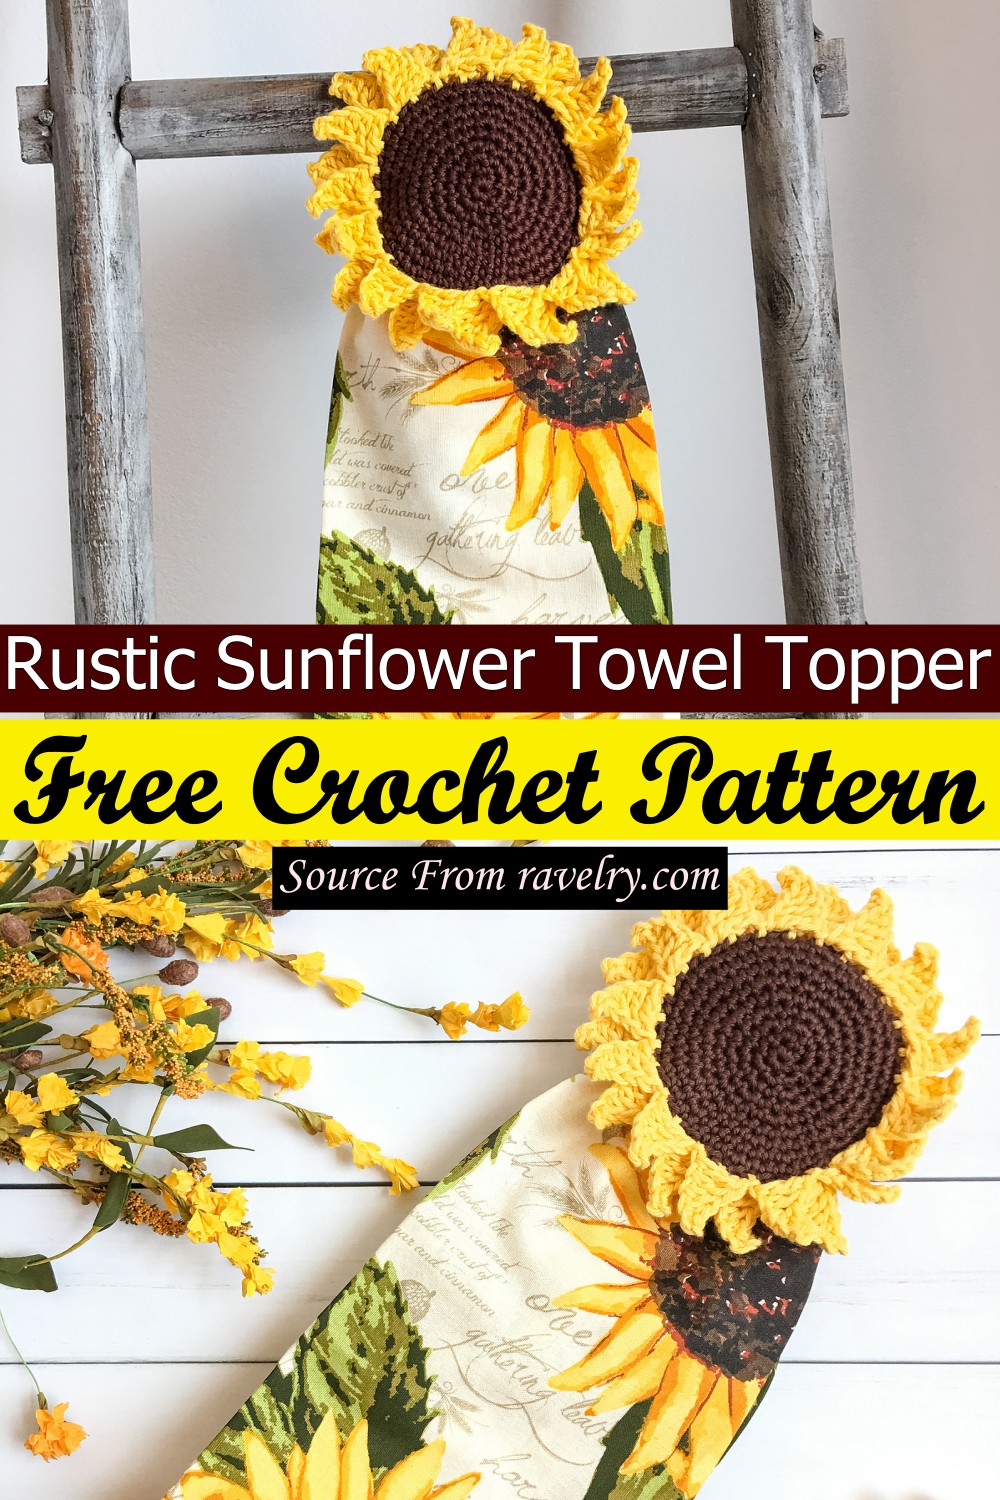 Free Crochet Rustic Sunflower Towel Topper Pattern